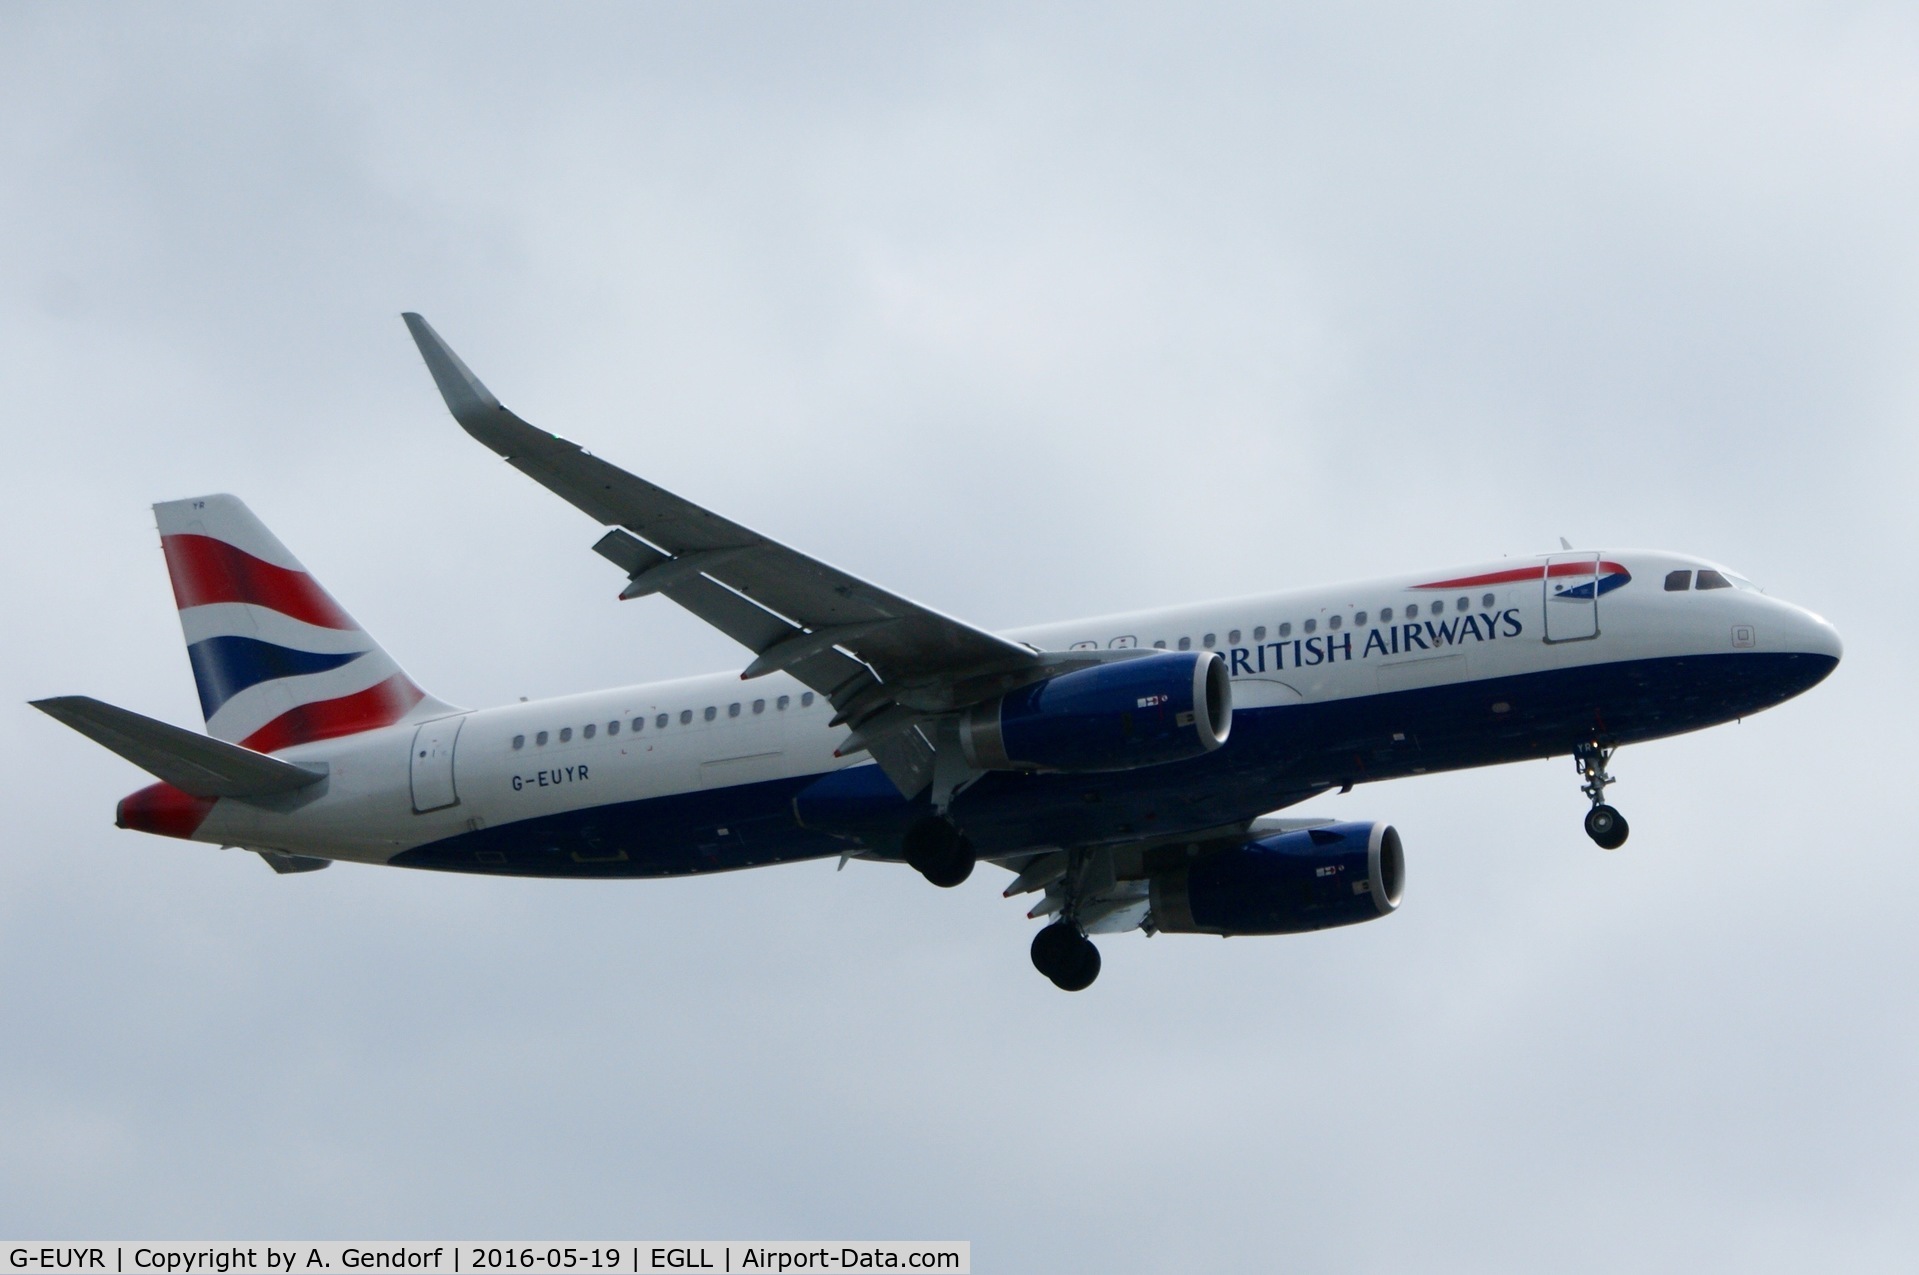 G-EUYR, 2013 Airbus A320-232 C/N 5856, British Airways, is here landing at London Heathrow(EGLL)